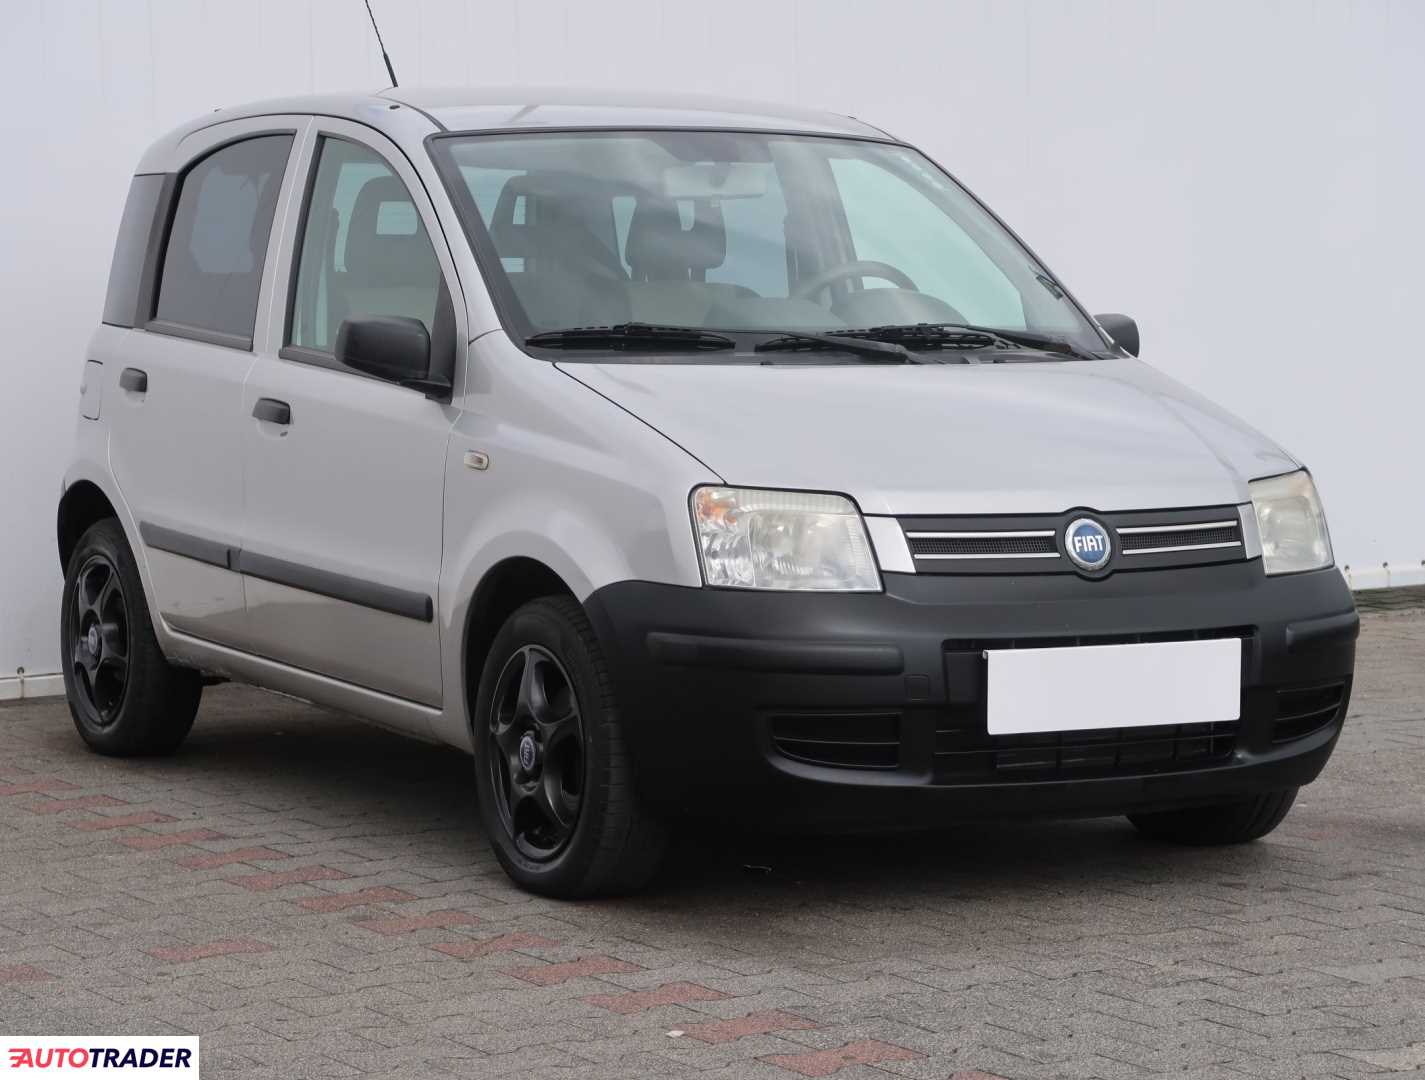 Fiat Panda 2006 1.2 59 KM